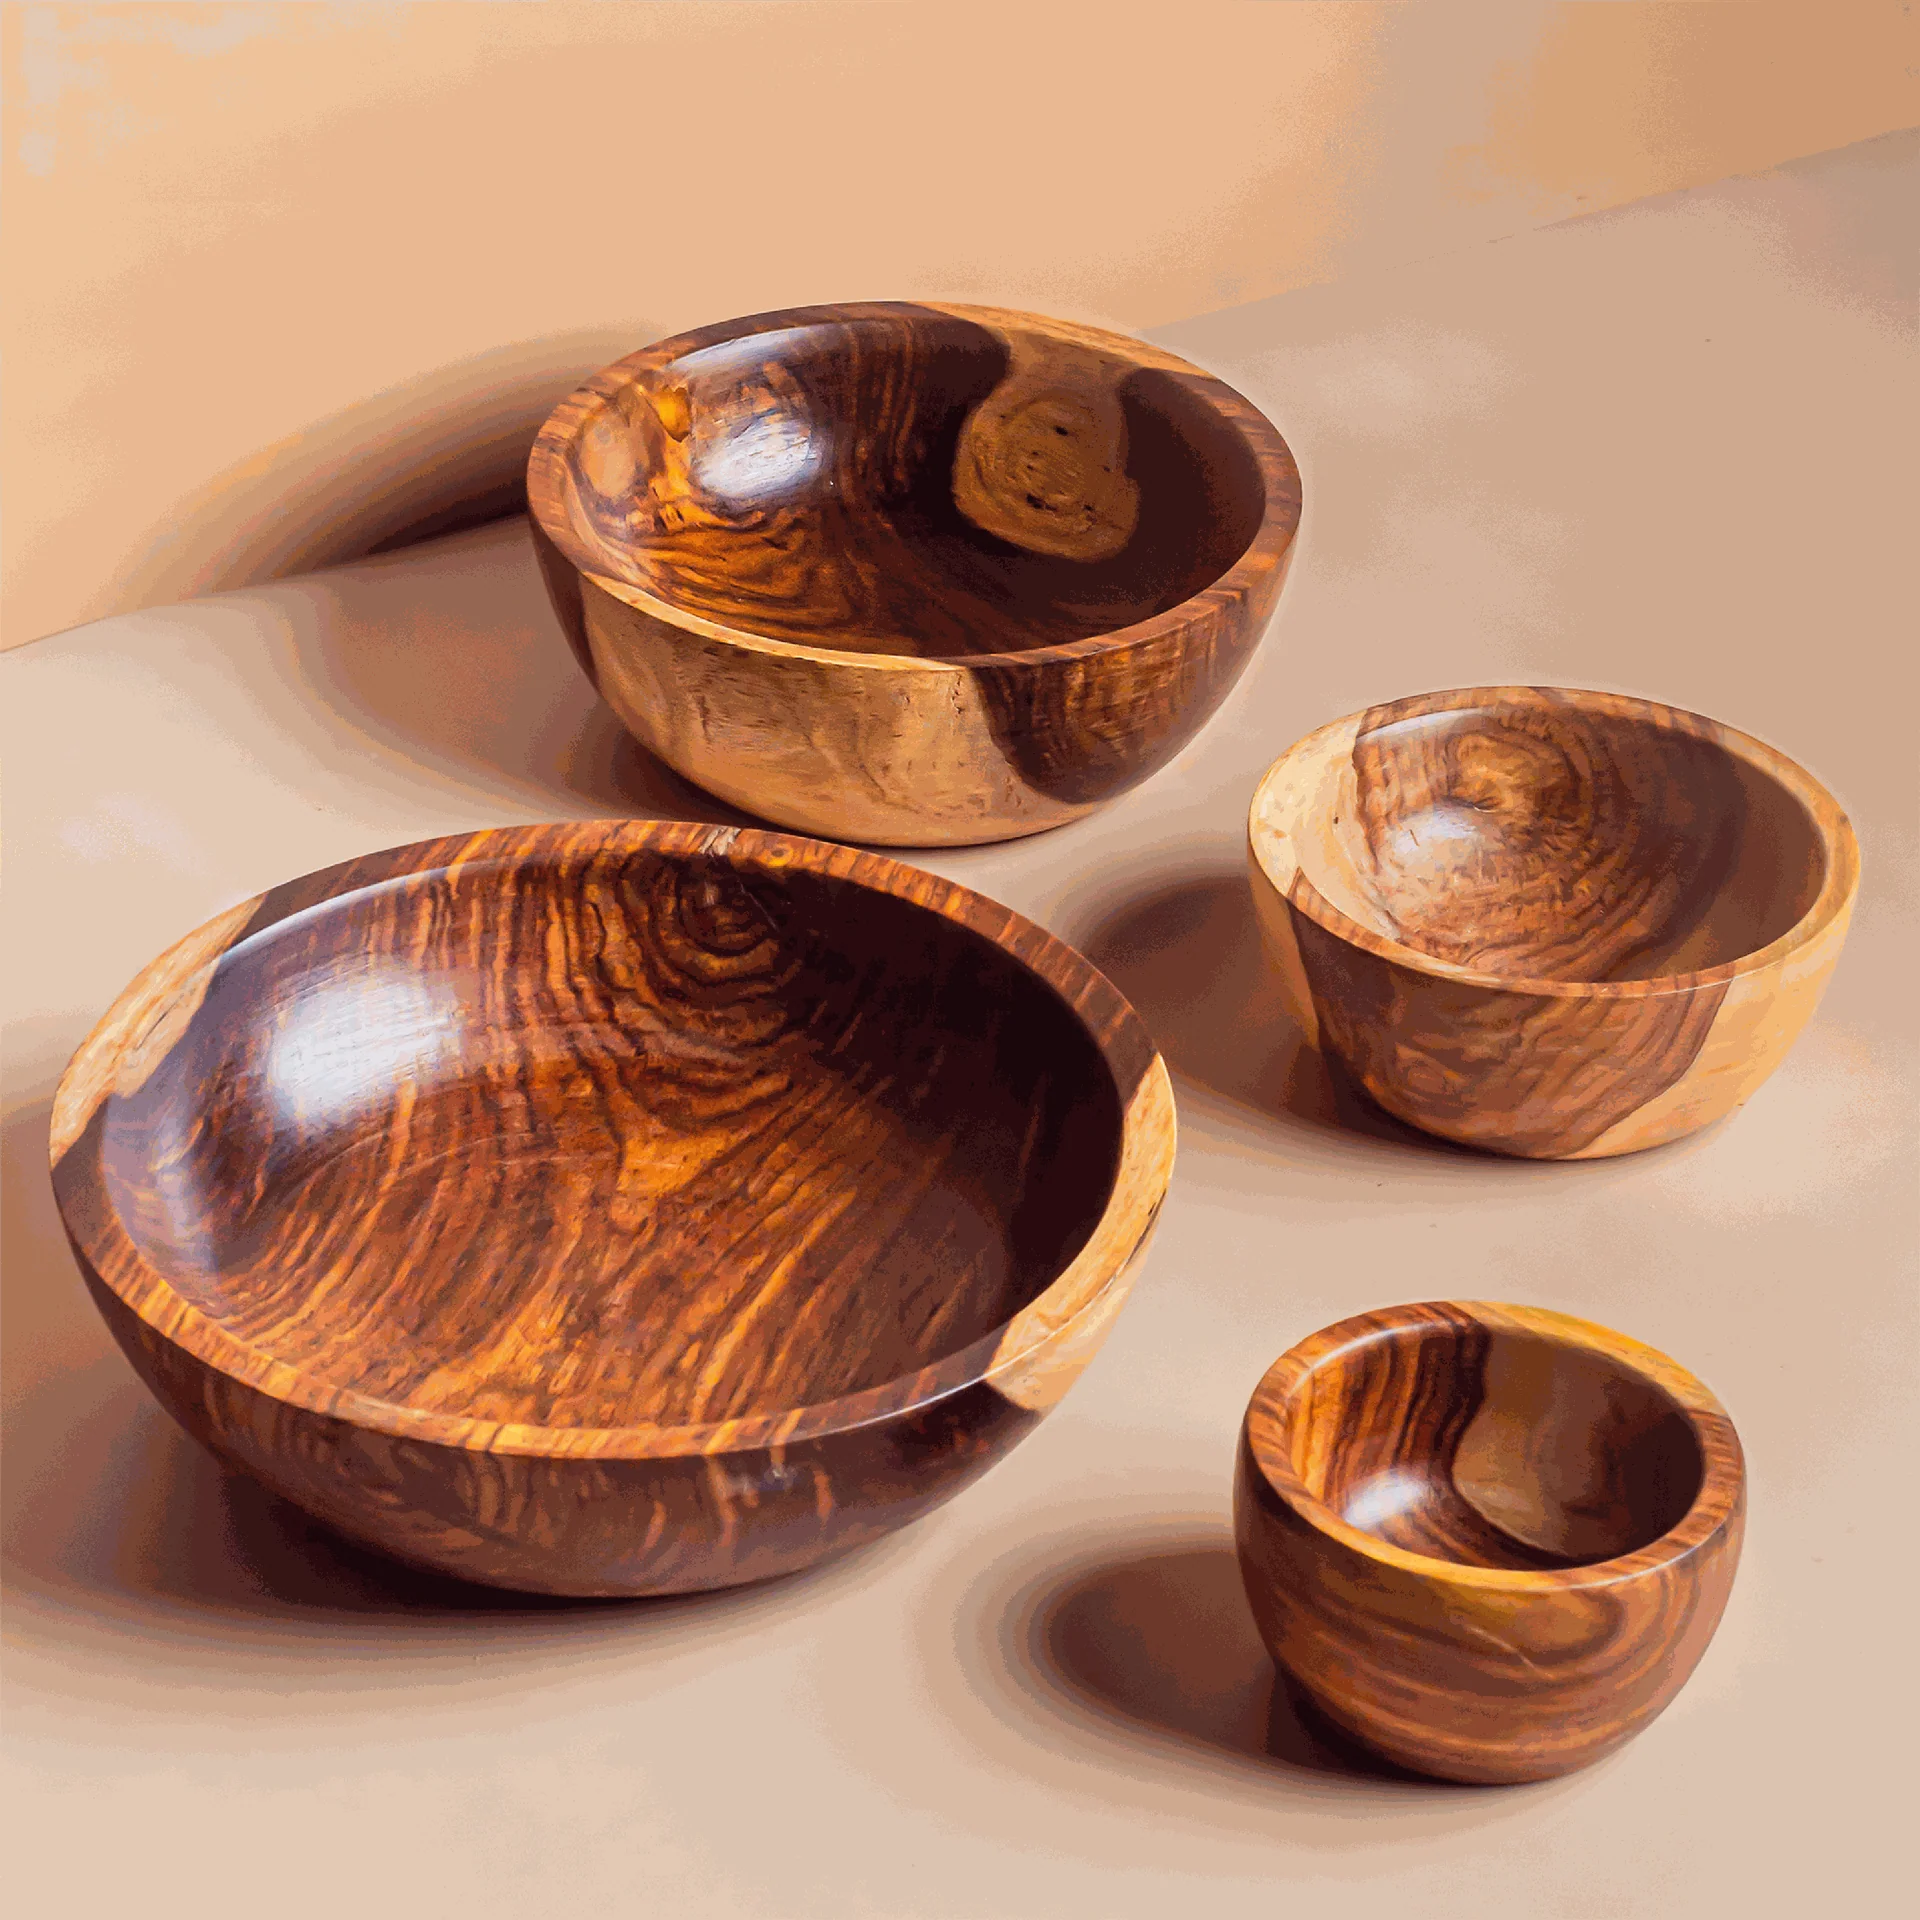 سمیروود | نگهداری از ظروف چوبی و استفاده از آن در پذیرایی و آشپزی